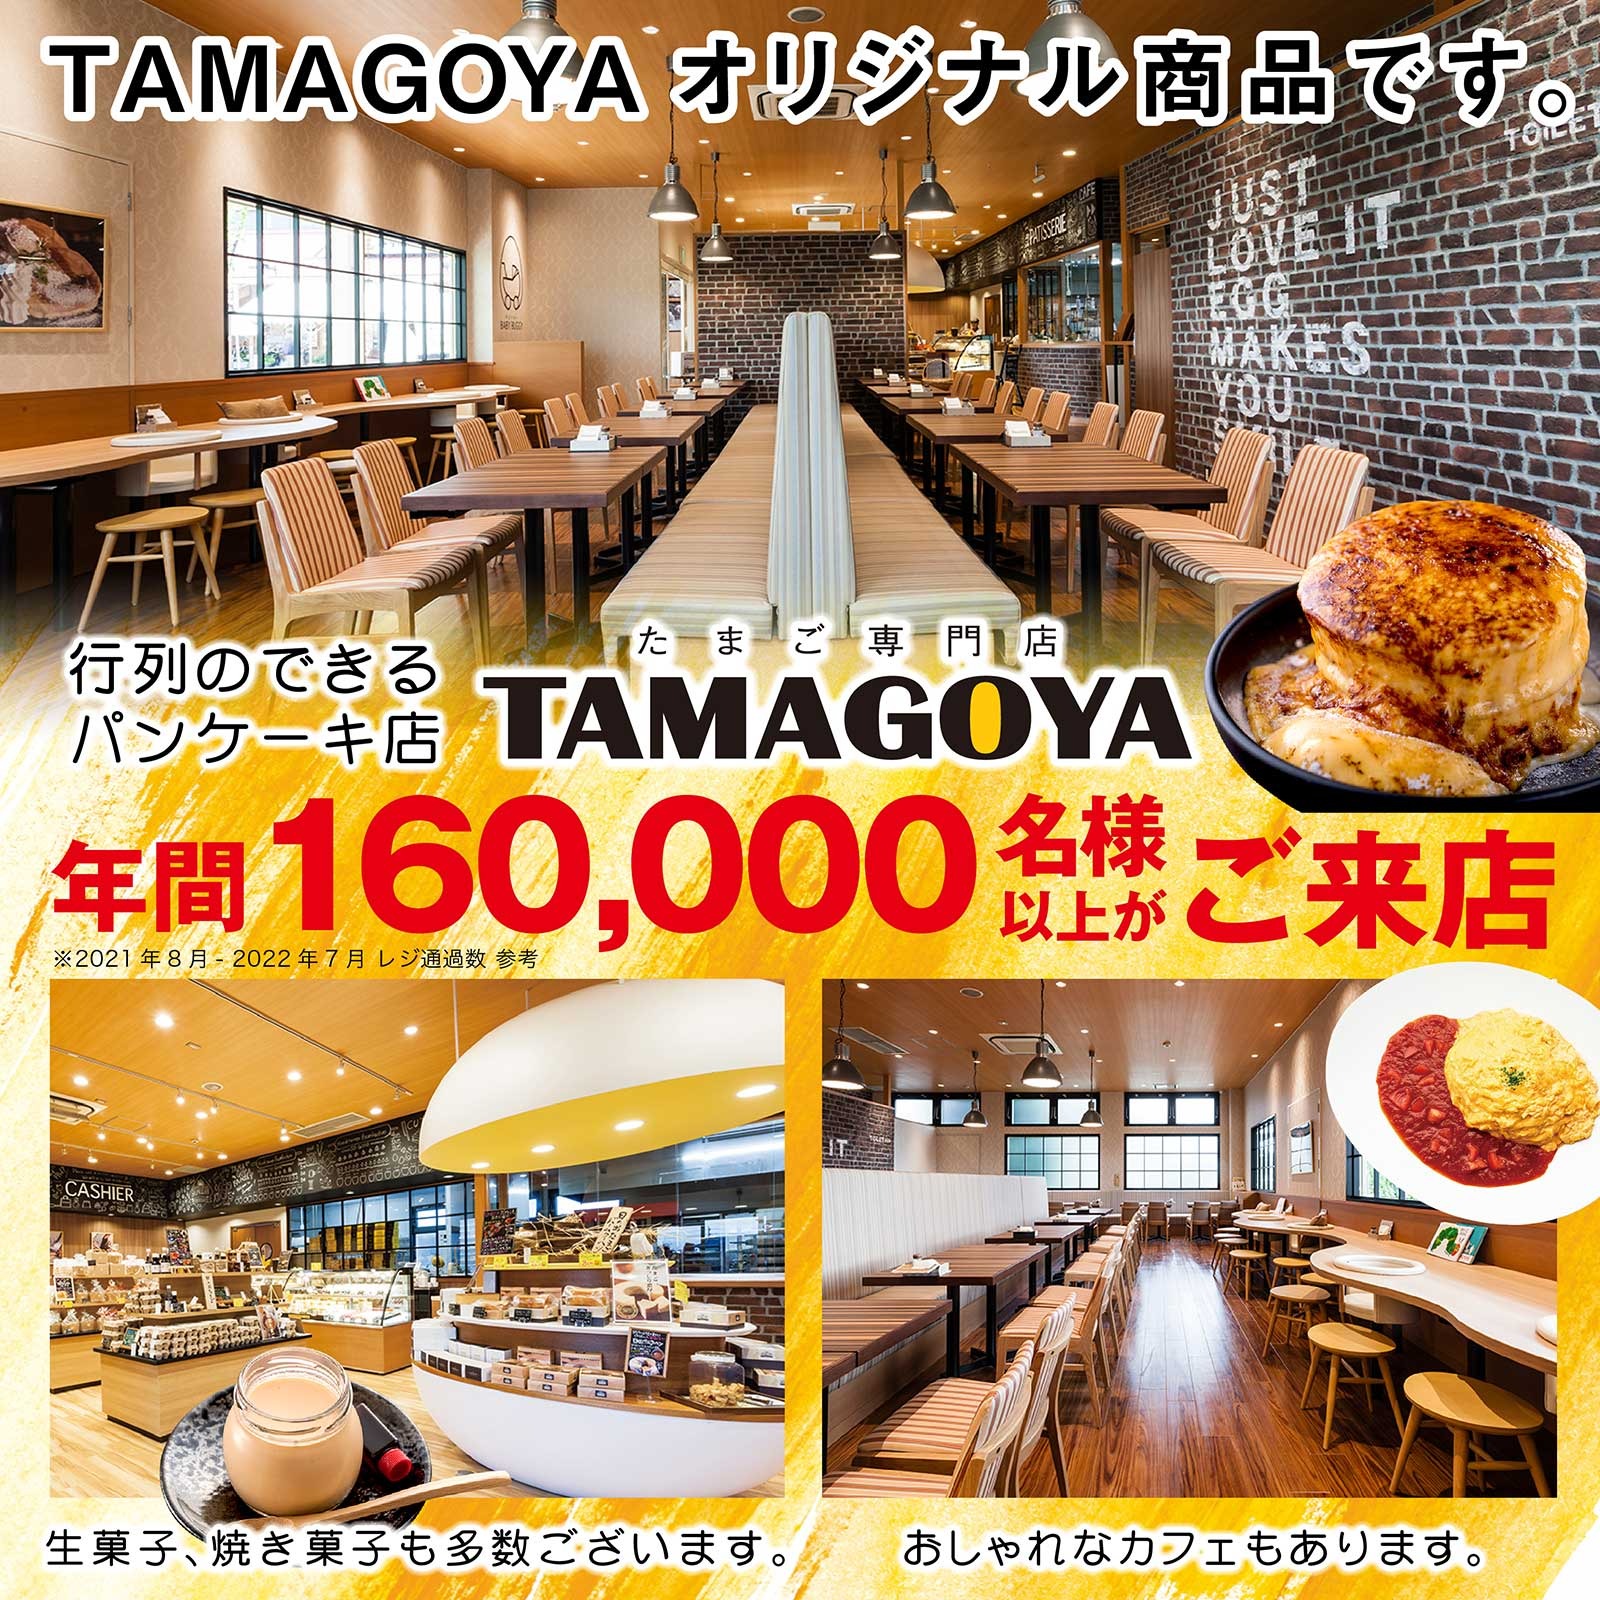 静岡県三島市人気のカフェTAMAGOYAカフェ